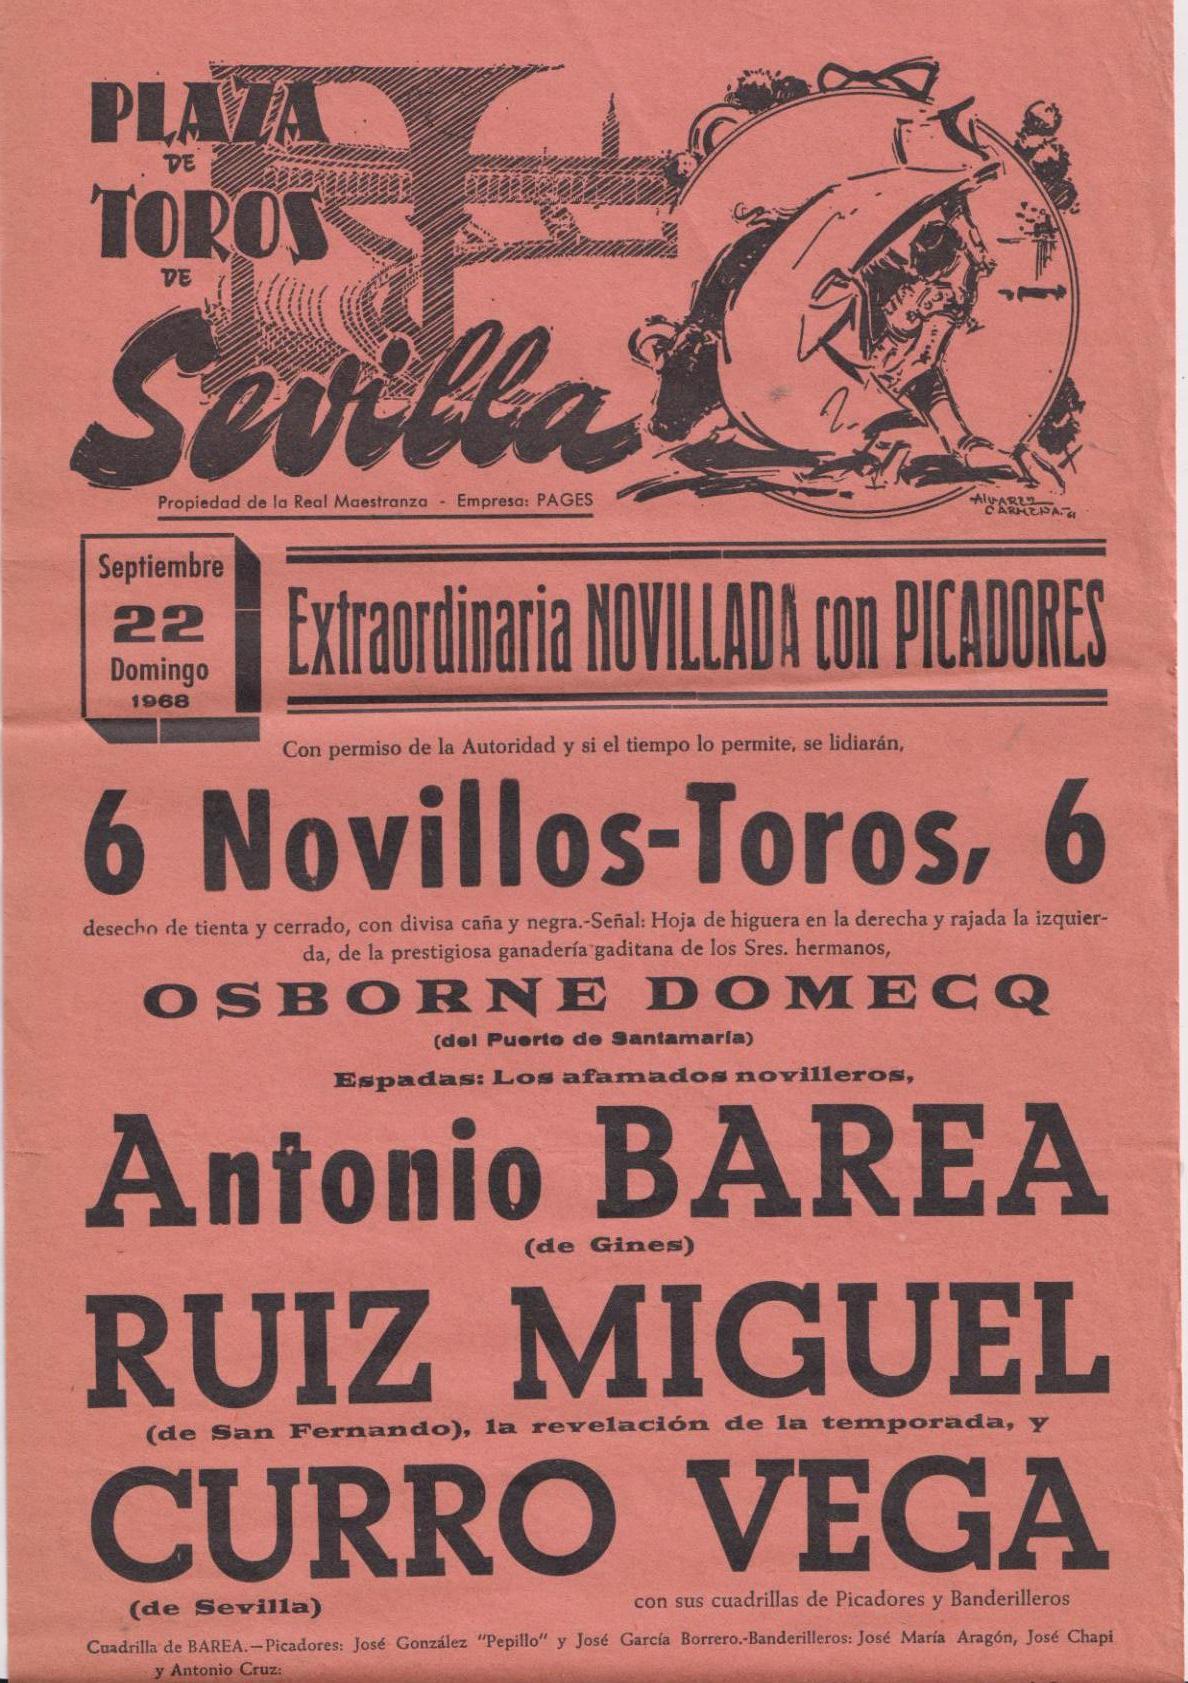 Cartel (45x21) Plaza de Toros de Sevilla 22 de Septiembre de 1968. Extraordinaria Novillada con Picadores